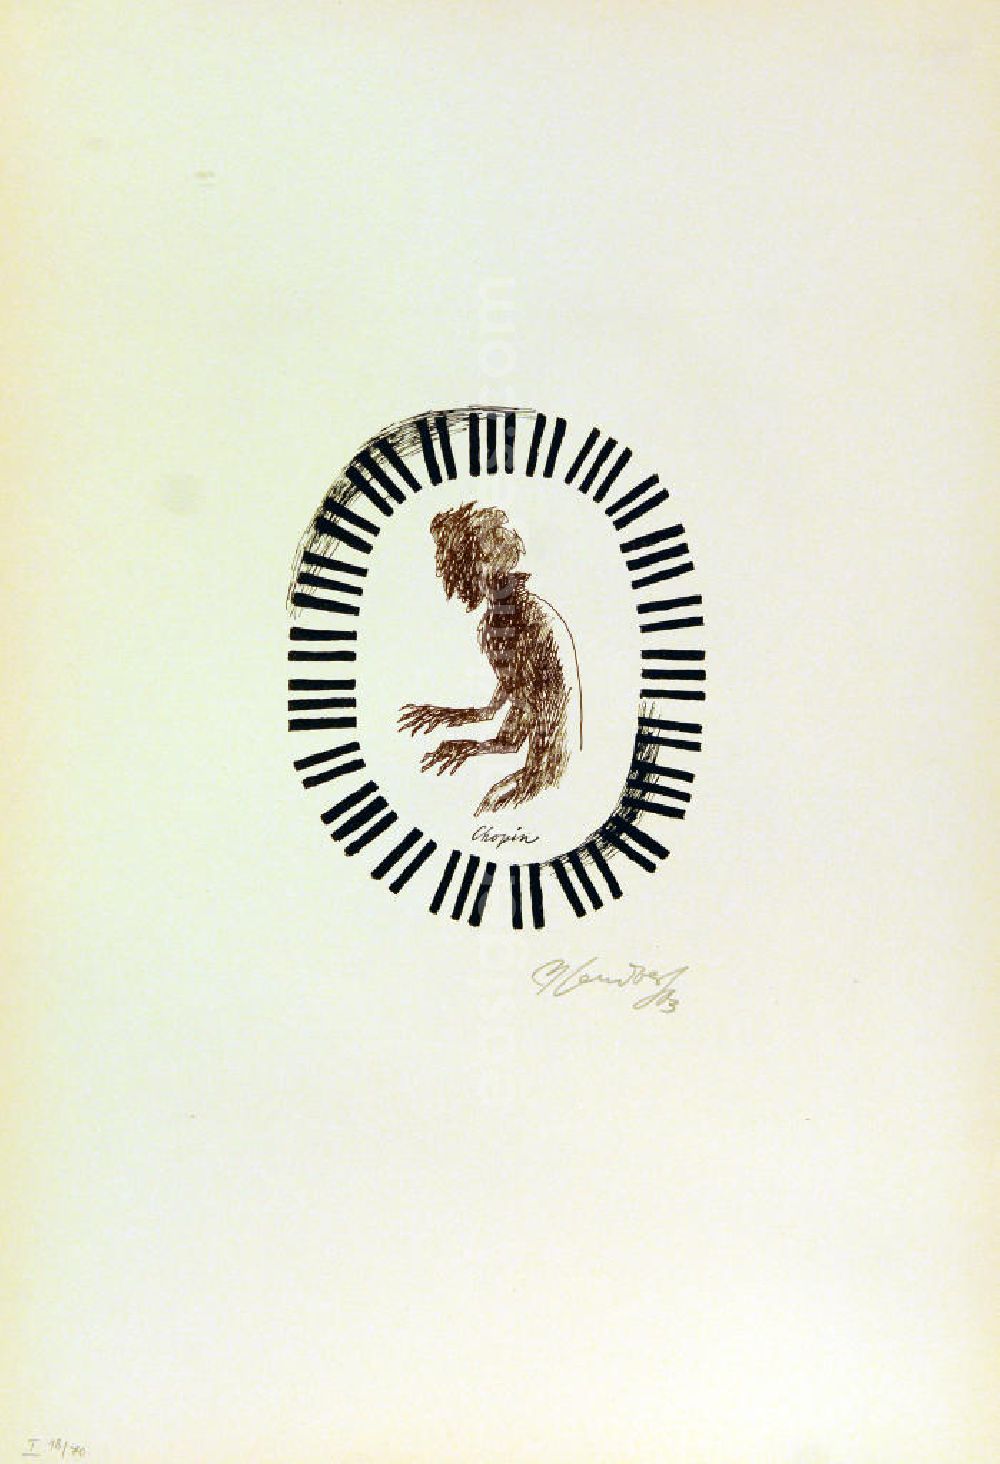 GDR image archive: Berlin - Grafik von Herbert Sandberg über Frédéric (Fryderyk) Chopin (*22.02.1810 †17.10.1849) Chopin aus dem Zyklus Meister der Musik aus dem Jahr 1963, 15,8x19,3cm Farblithographie, handsigniert, I 18/7